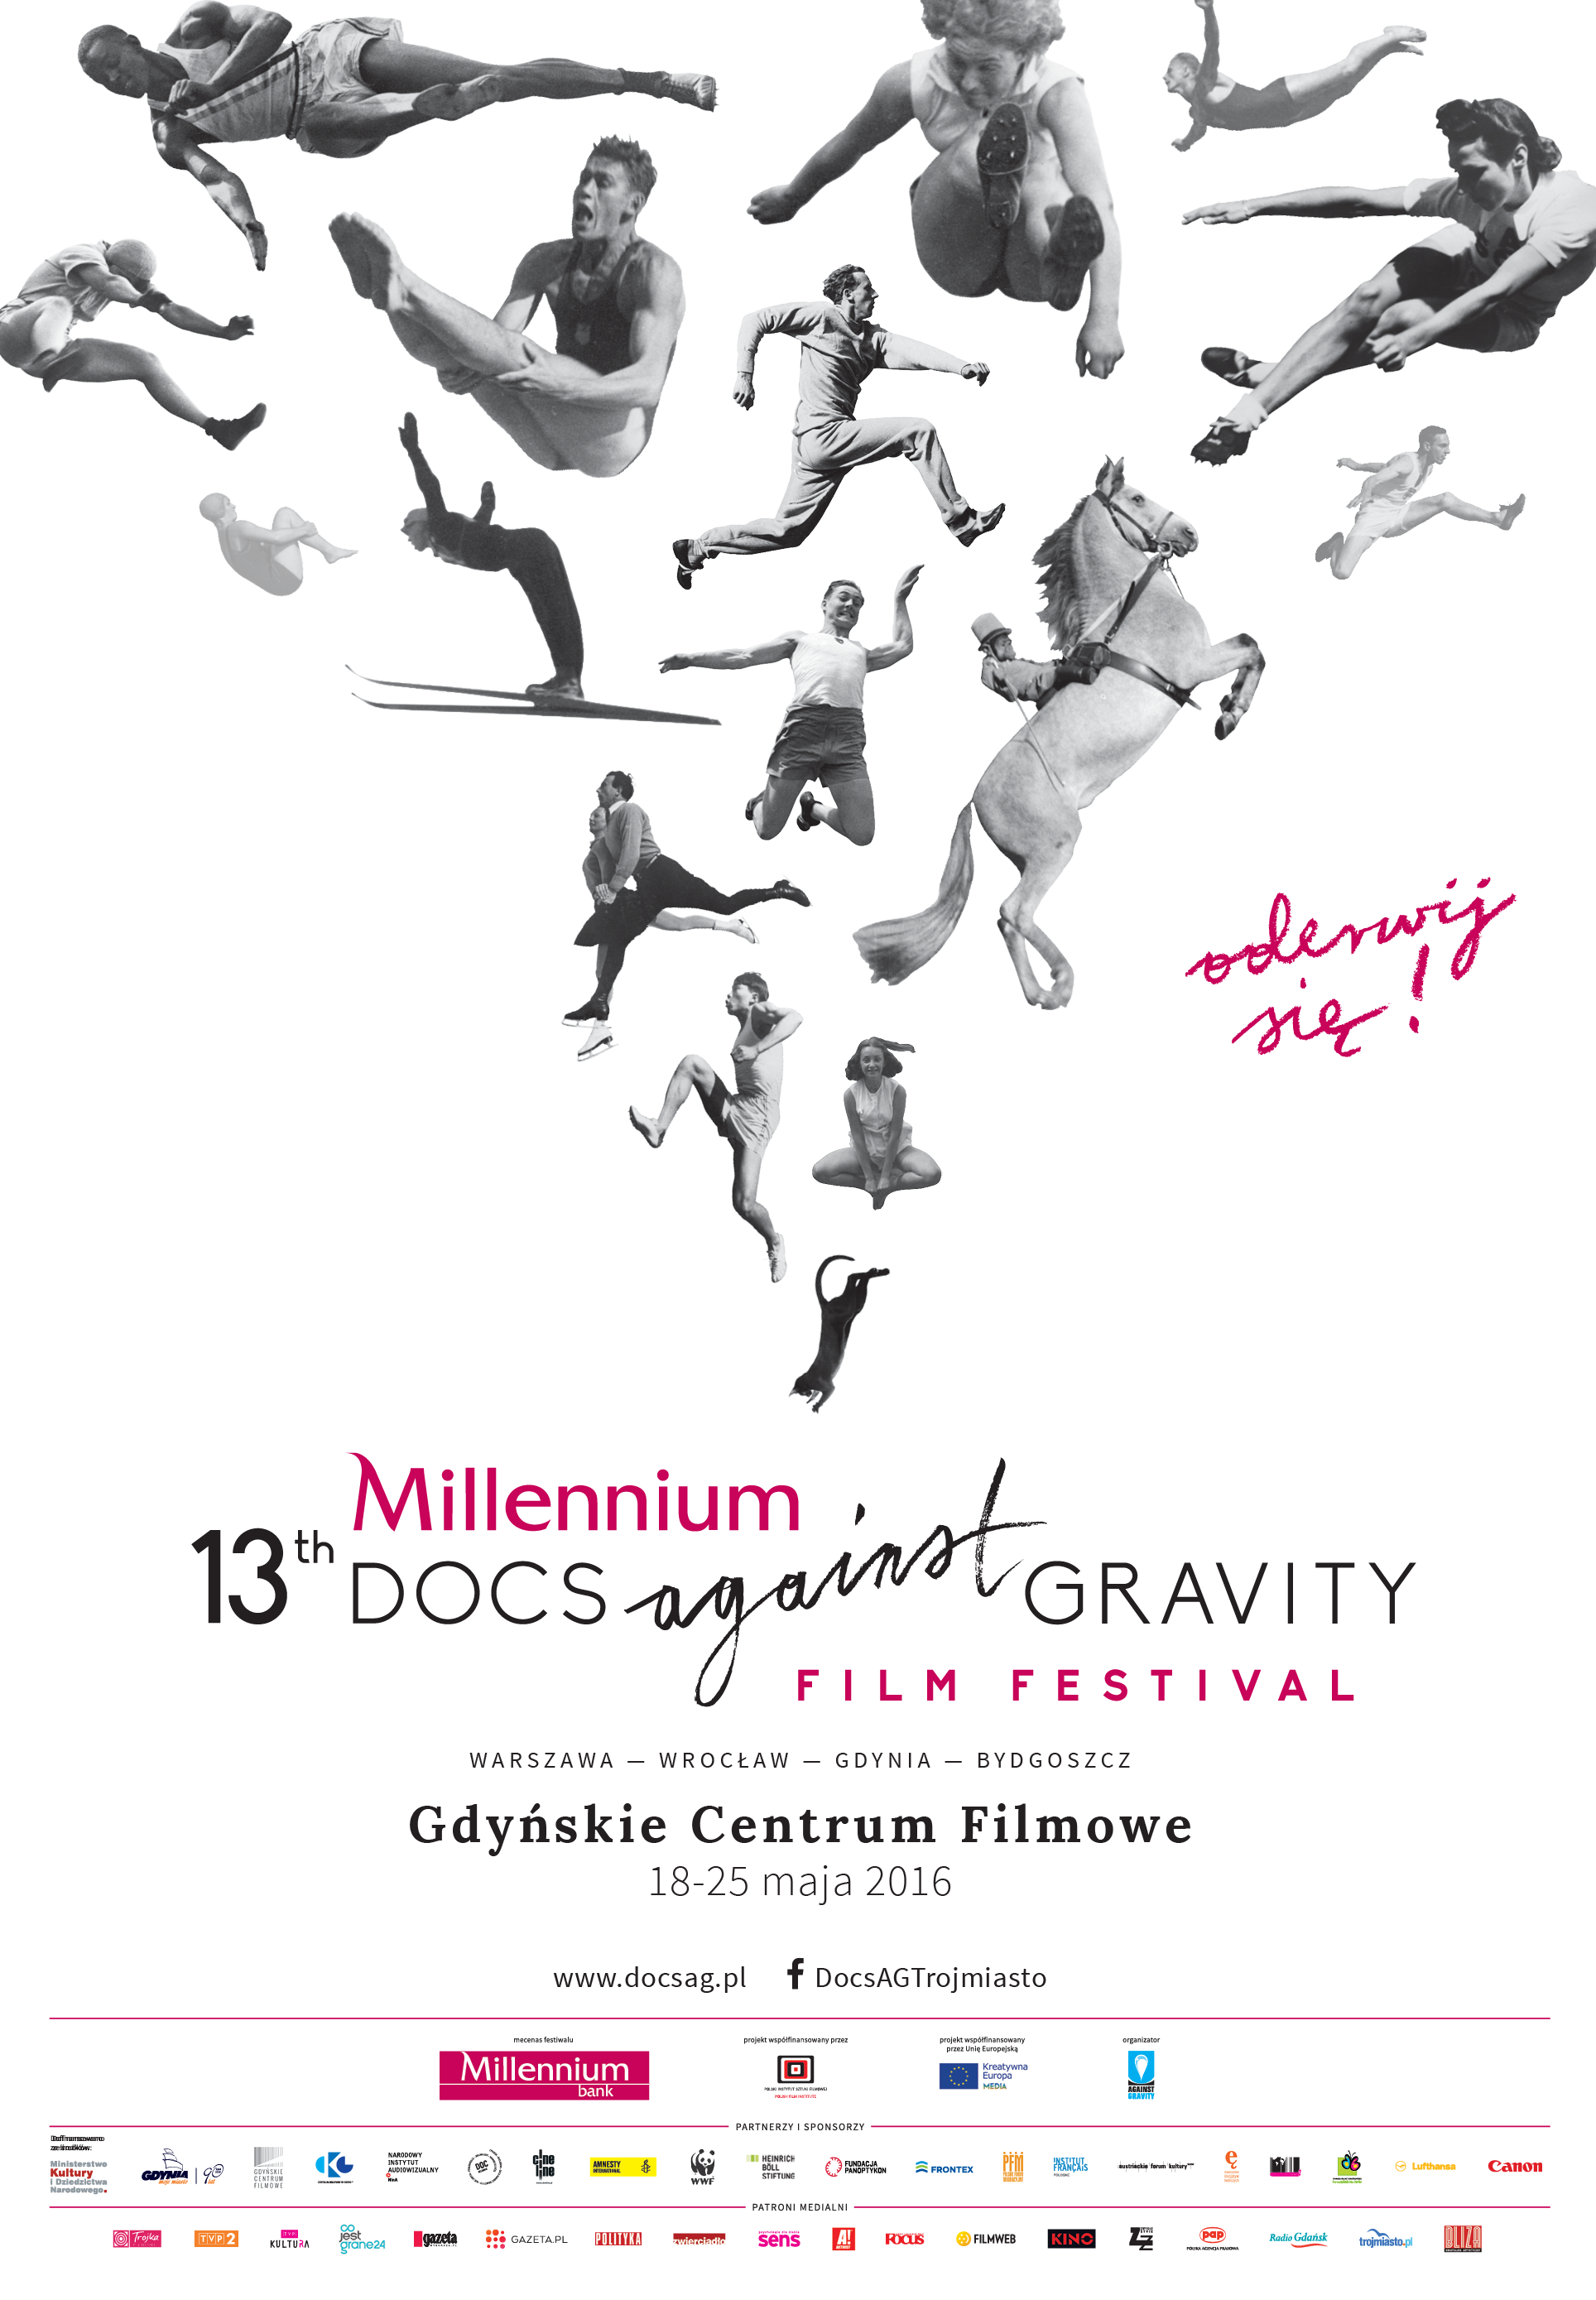 Kup bilet do kina na 13. Millennium Docs Against Gravity FF w Gdyni